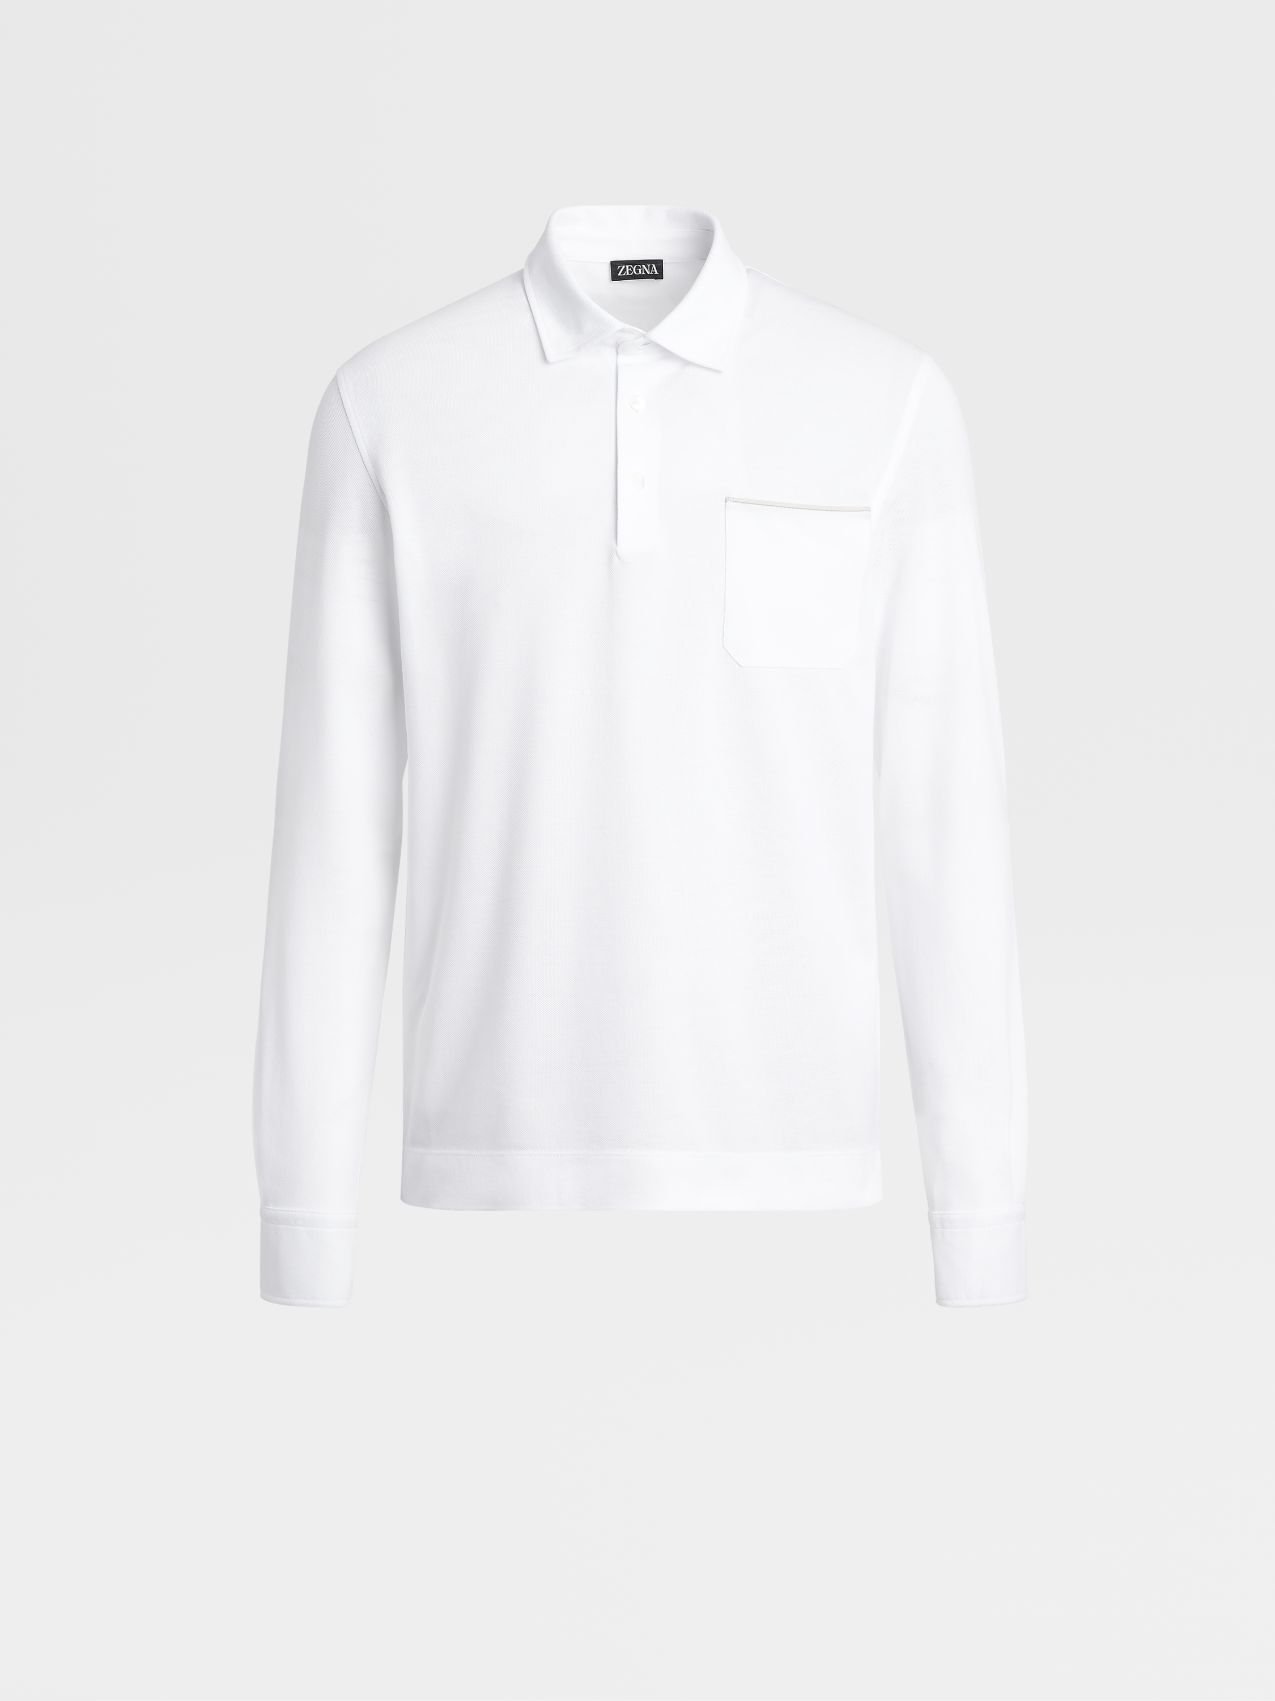 Optical White Cotton Polo Shirt